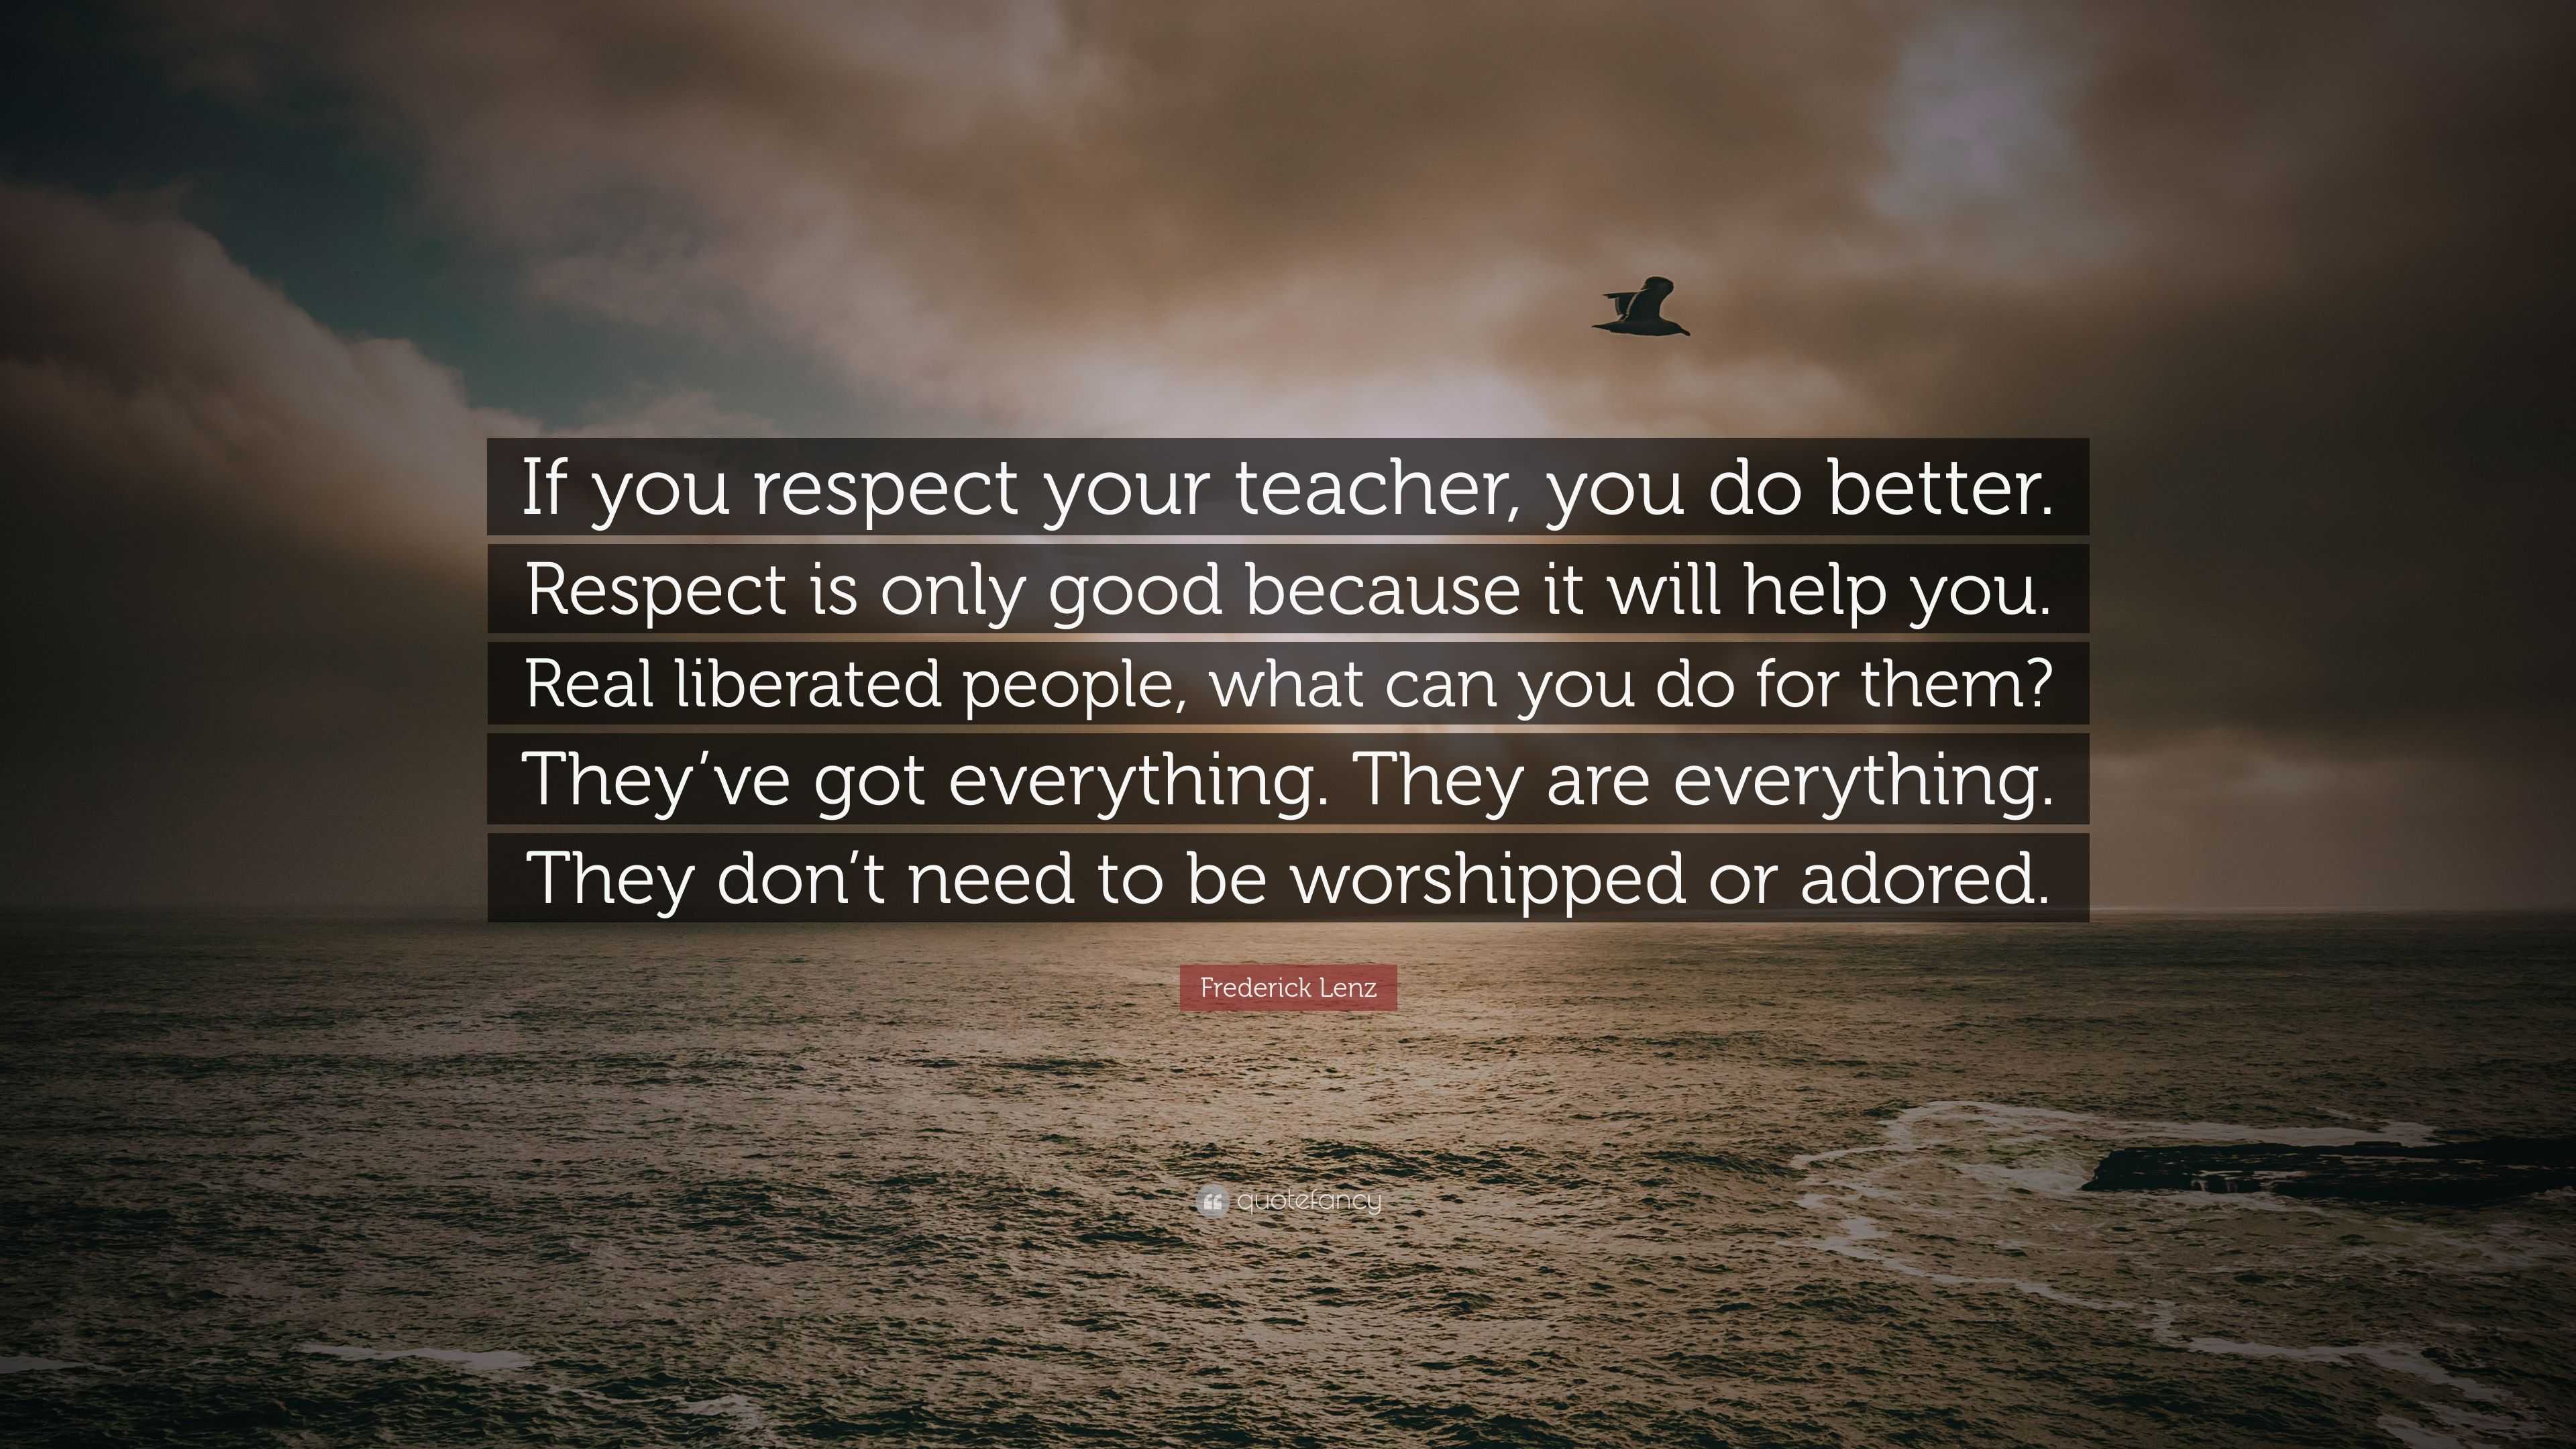 speech on respect for teachers